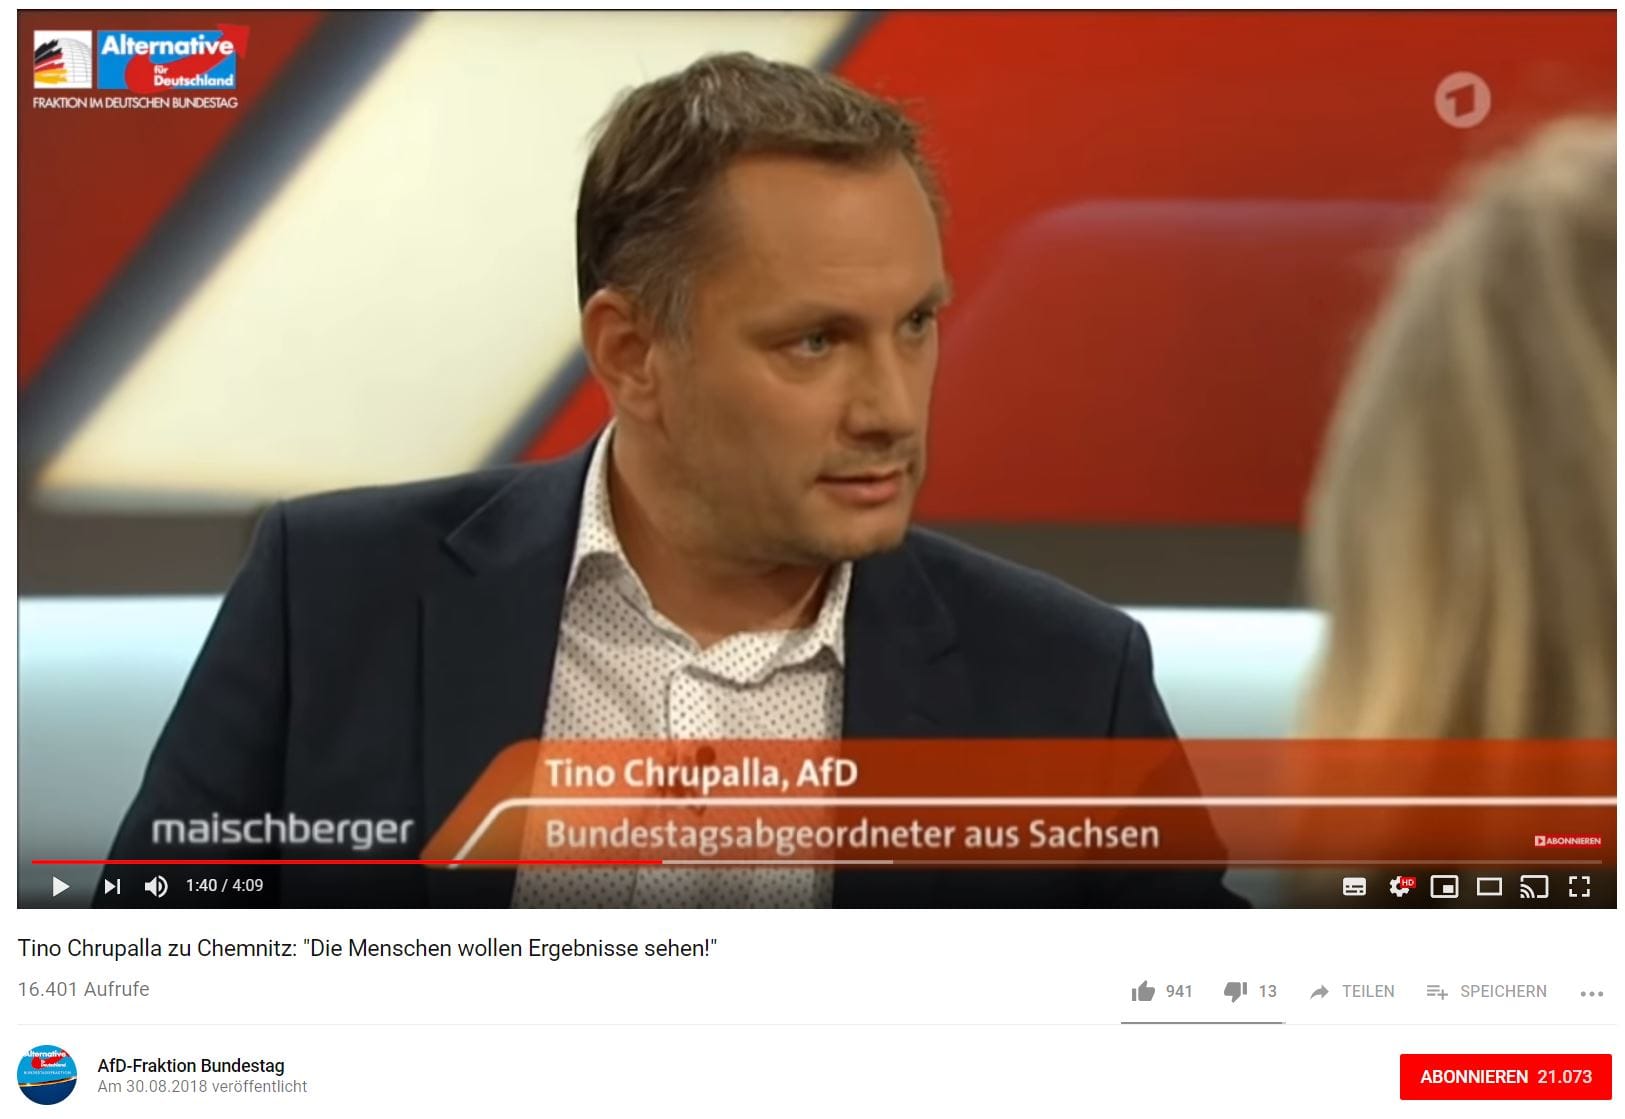 Der AfD-Bundestagsabgeordnete Tino Chrupalla in der ARD-Sendung "Maischberger": Die AfD-Fraktion im Bundestag nutzt den Ausschnitt zur Öffentlichkeitsarbeit.